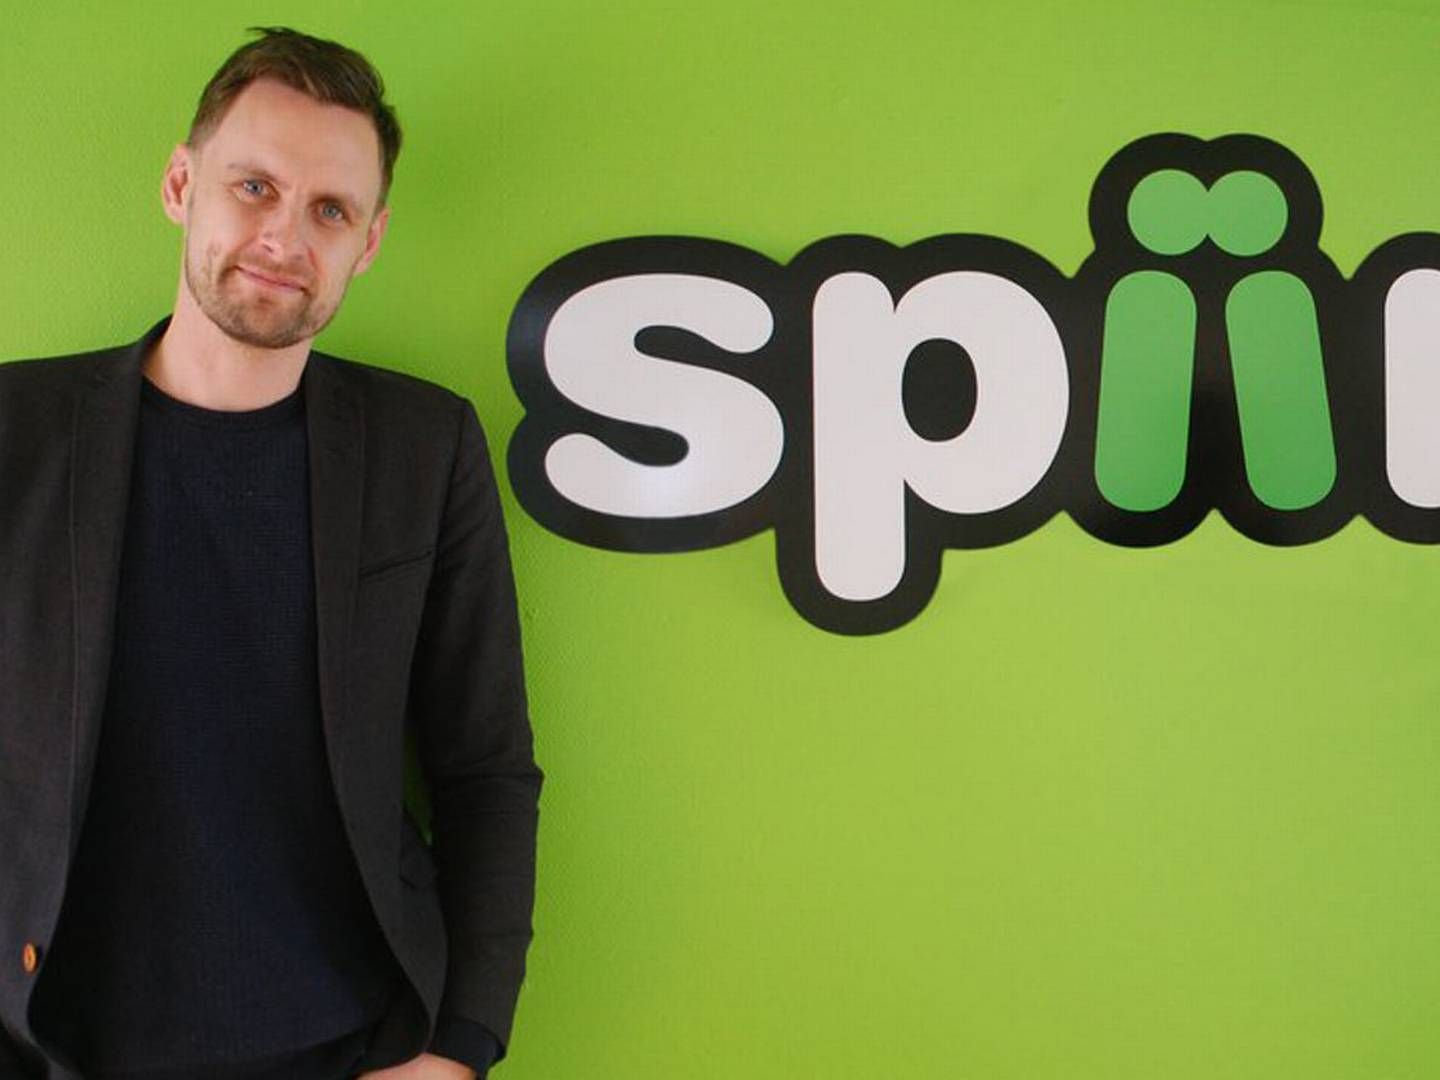 Rune Mai er direktør for fintechvirksomheden Spiir.